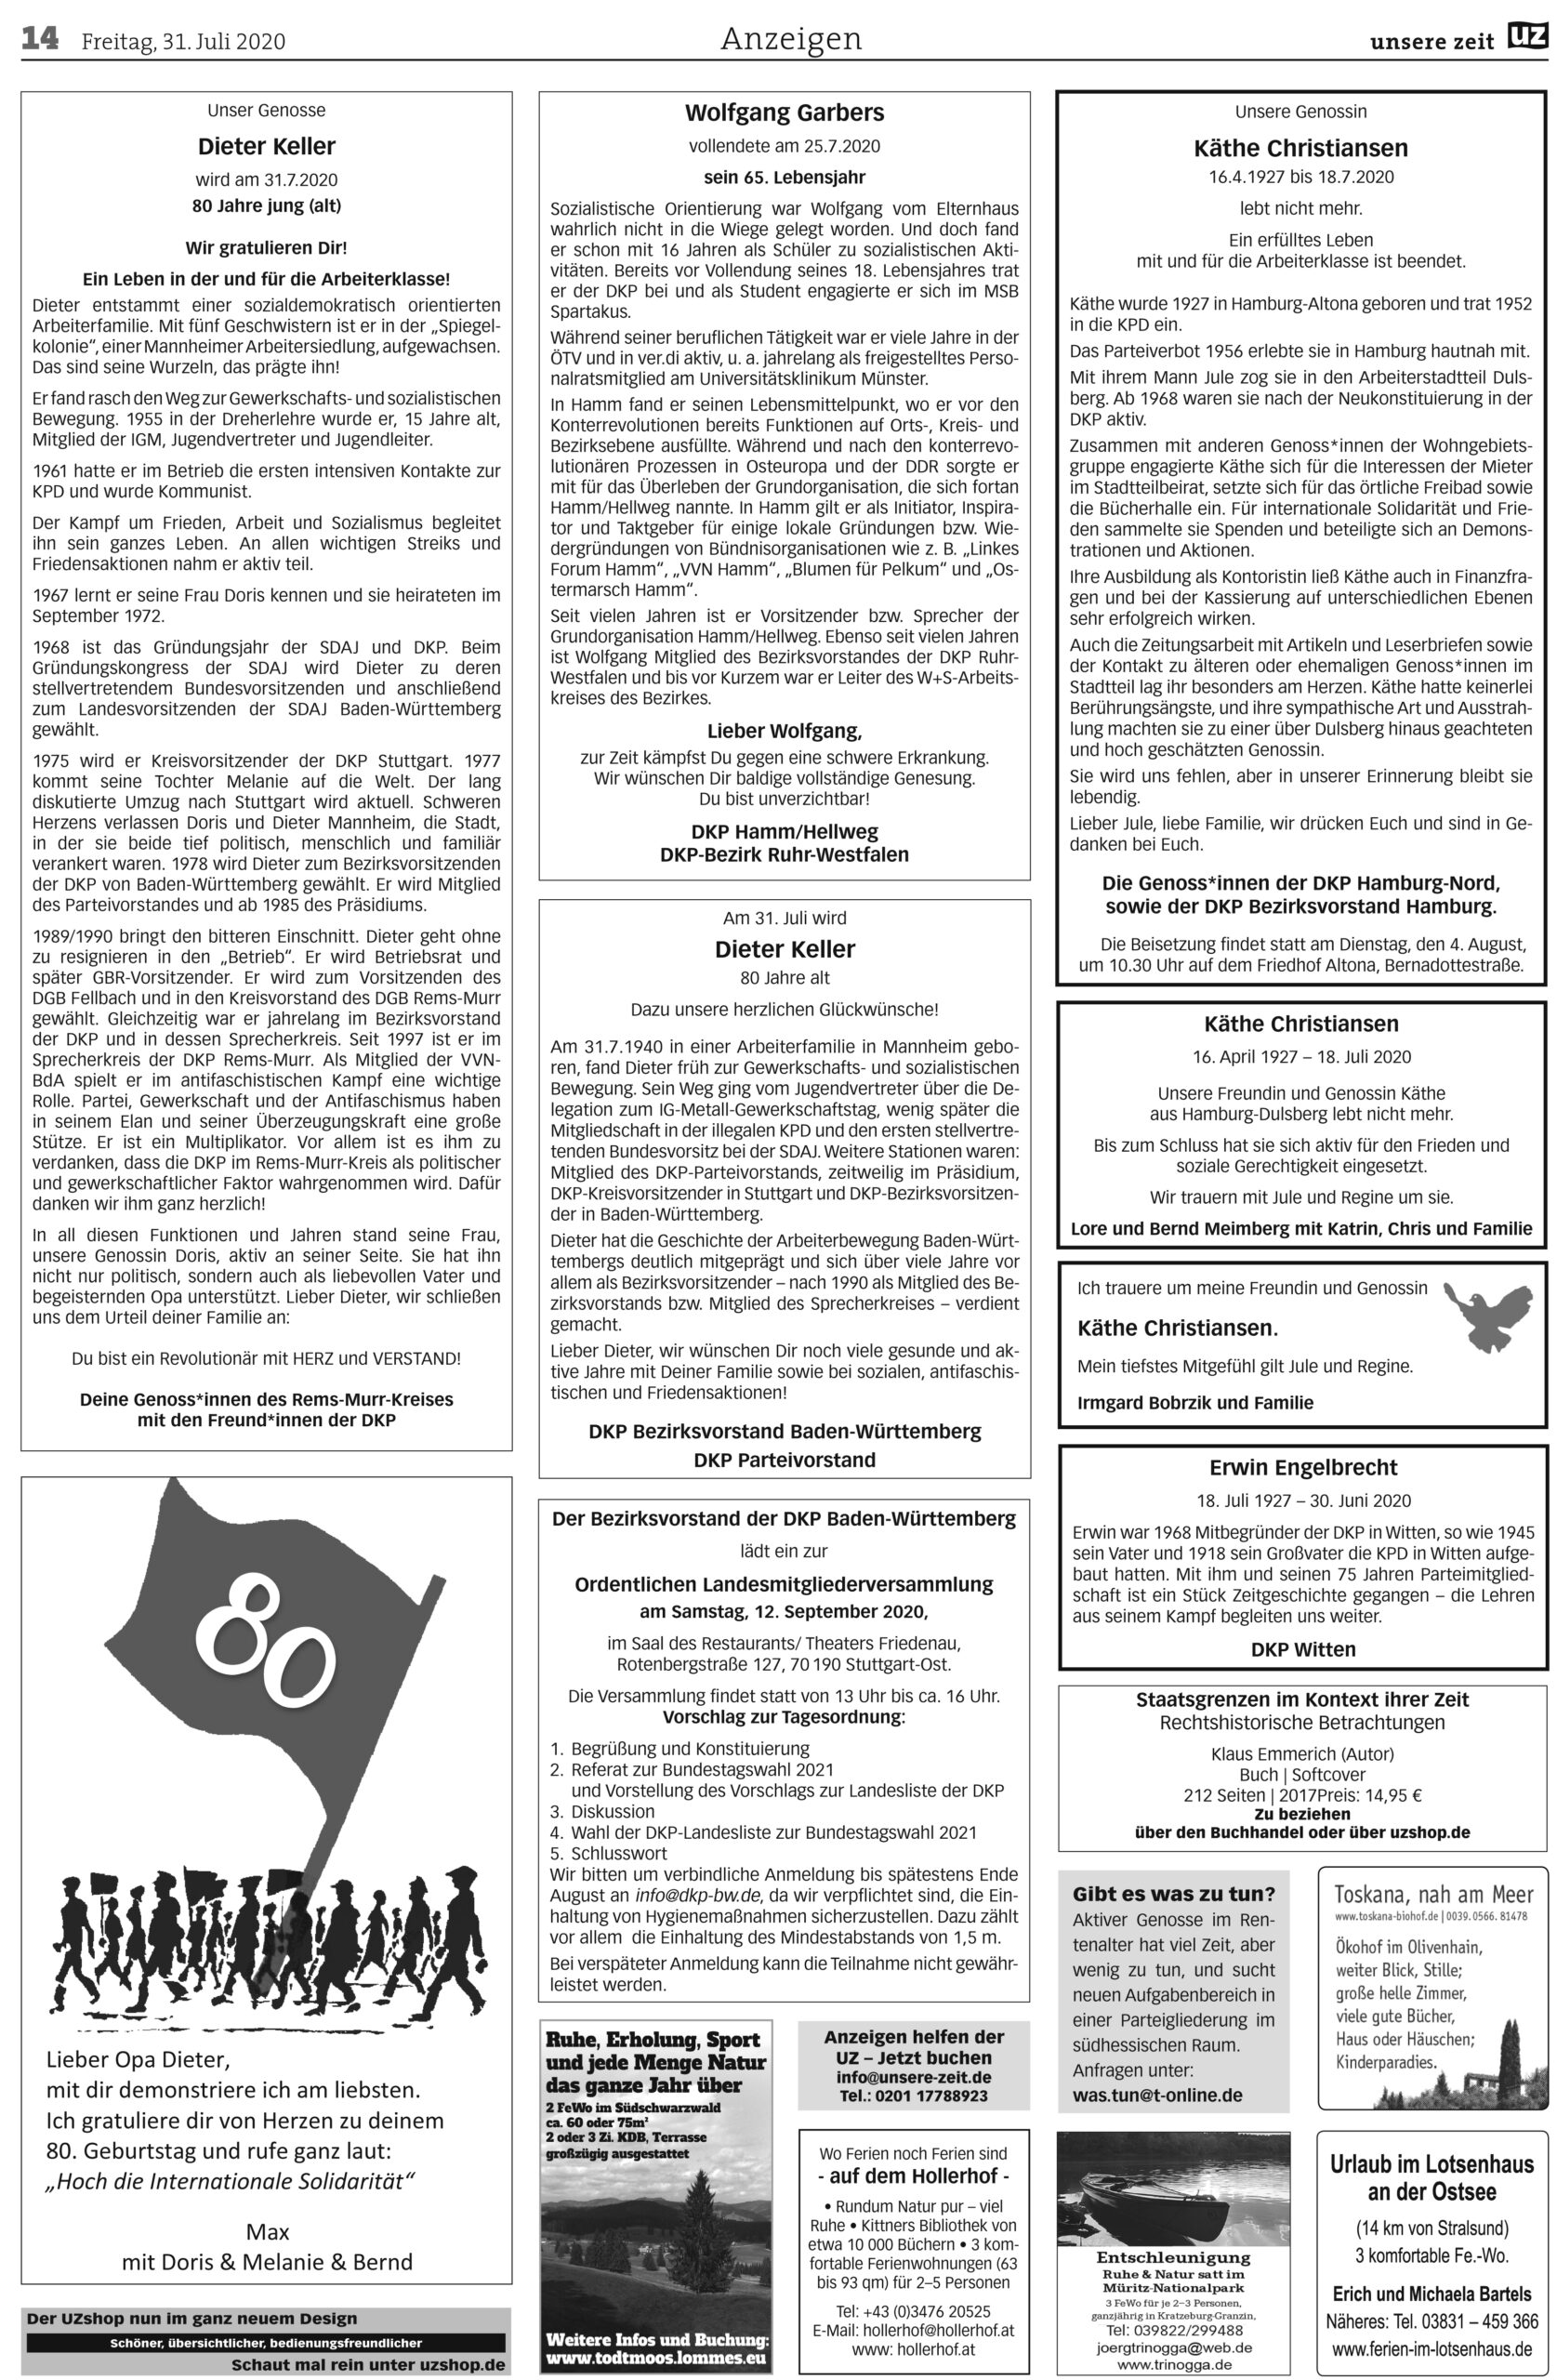 UZ 31 14 scaled - Anzeigen 2020-31 - Anzeigen - Anzeigen